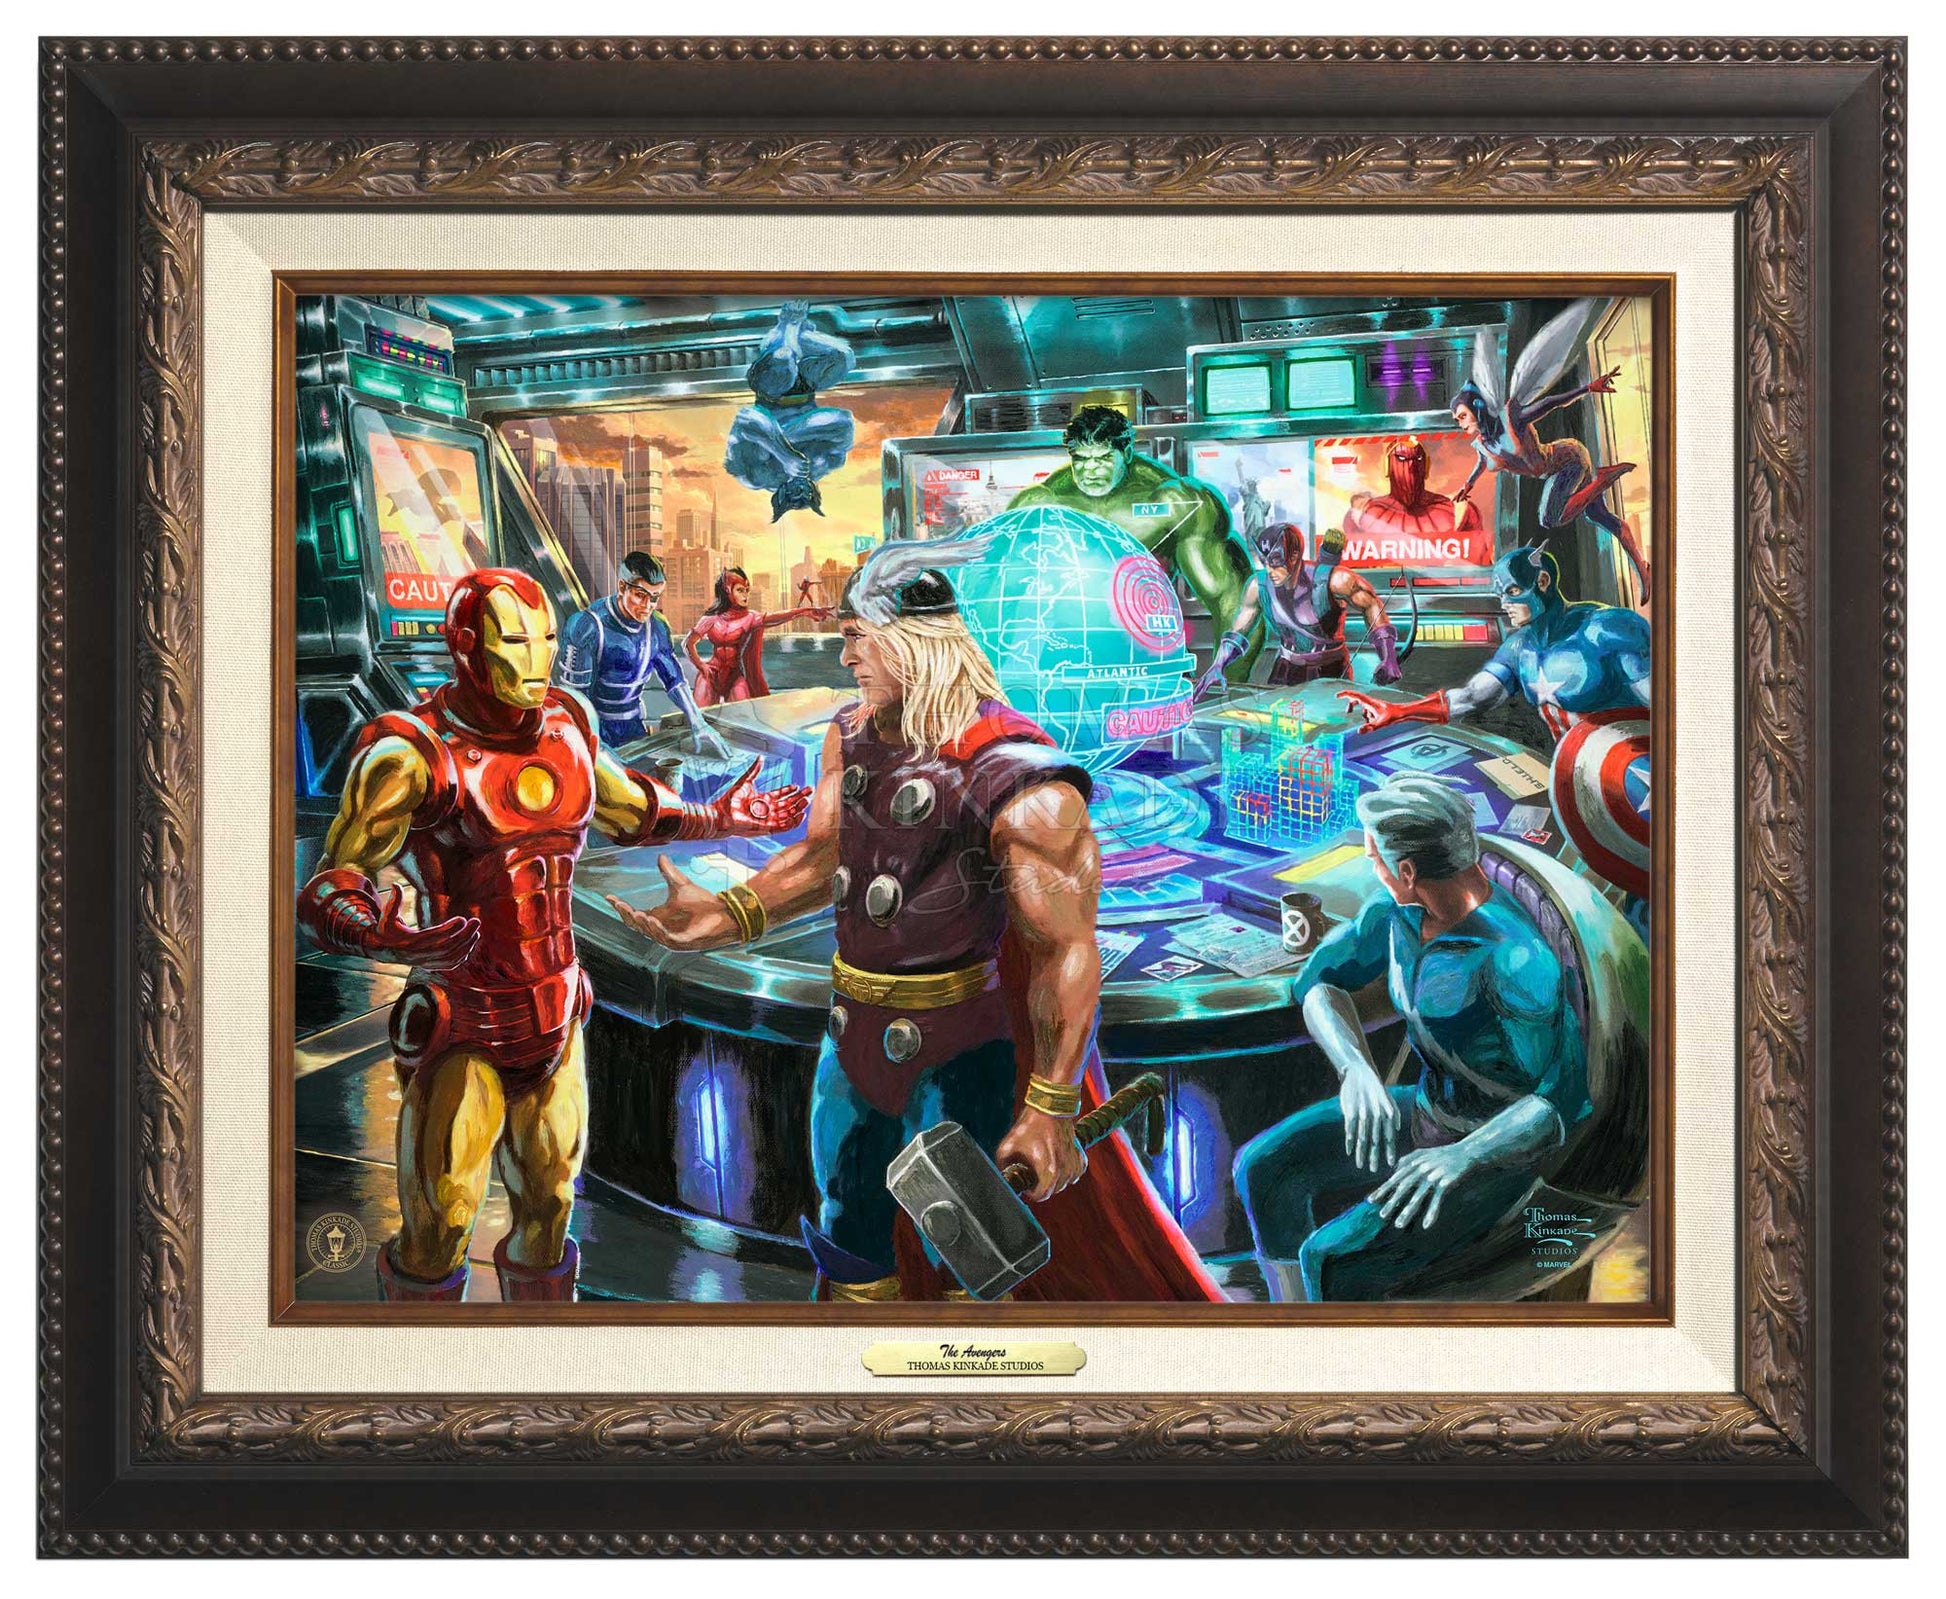 Avengers Endgame Group Marvel Movie Cool Wall Decor Art Print